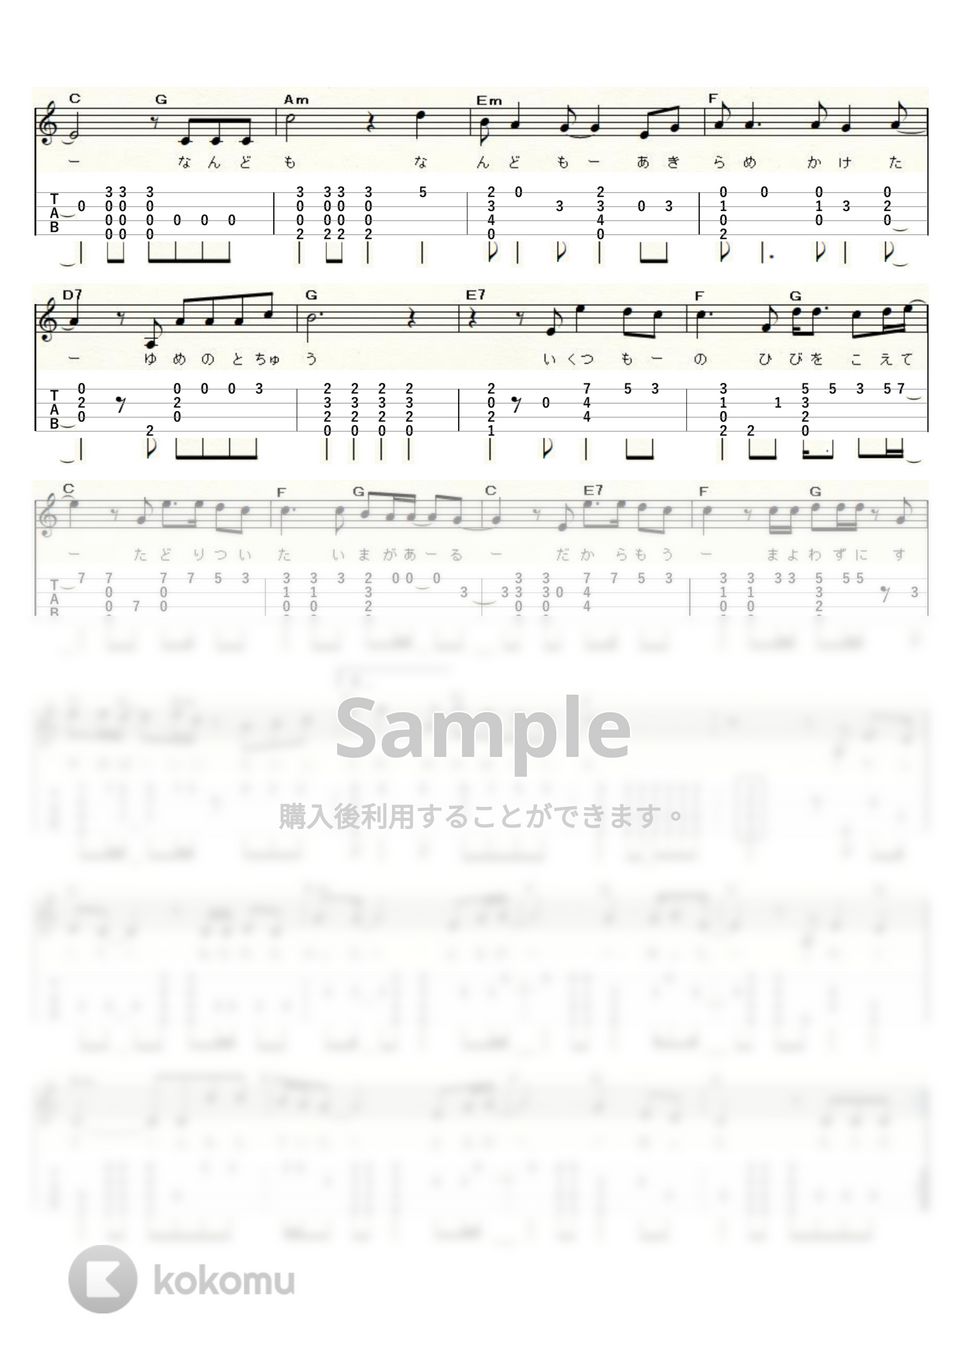 ゆず - 栄光の架橋 (ｳｸﾚﾚｿﾛ / Low-G / 上級) by ukulelepapa